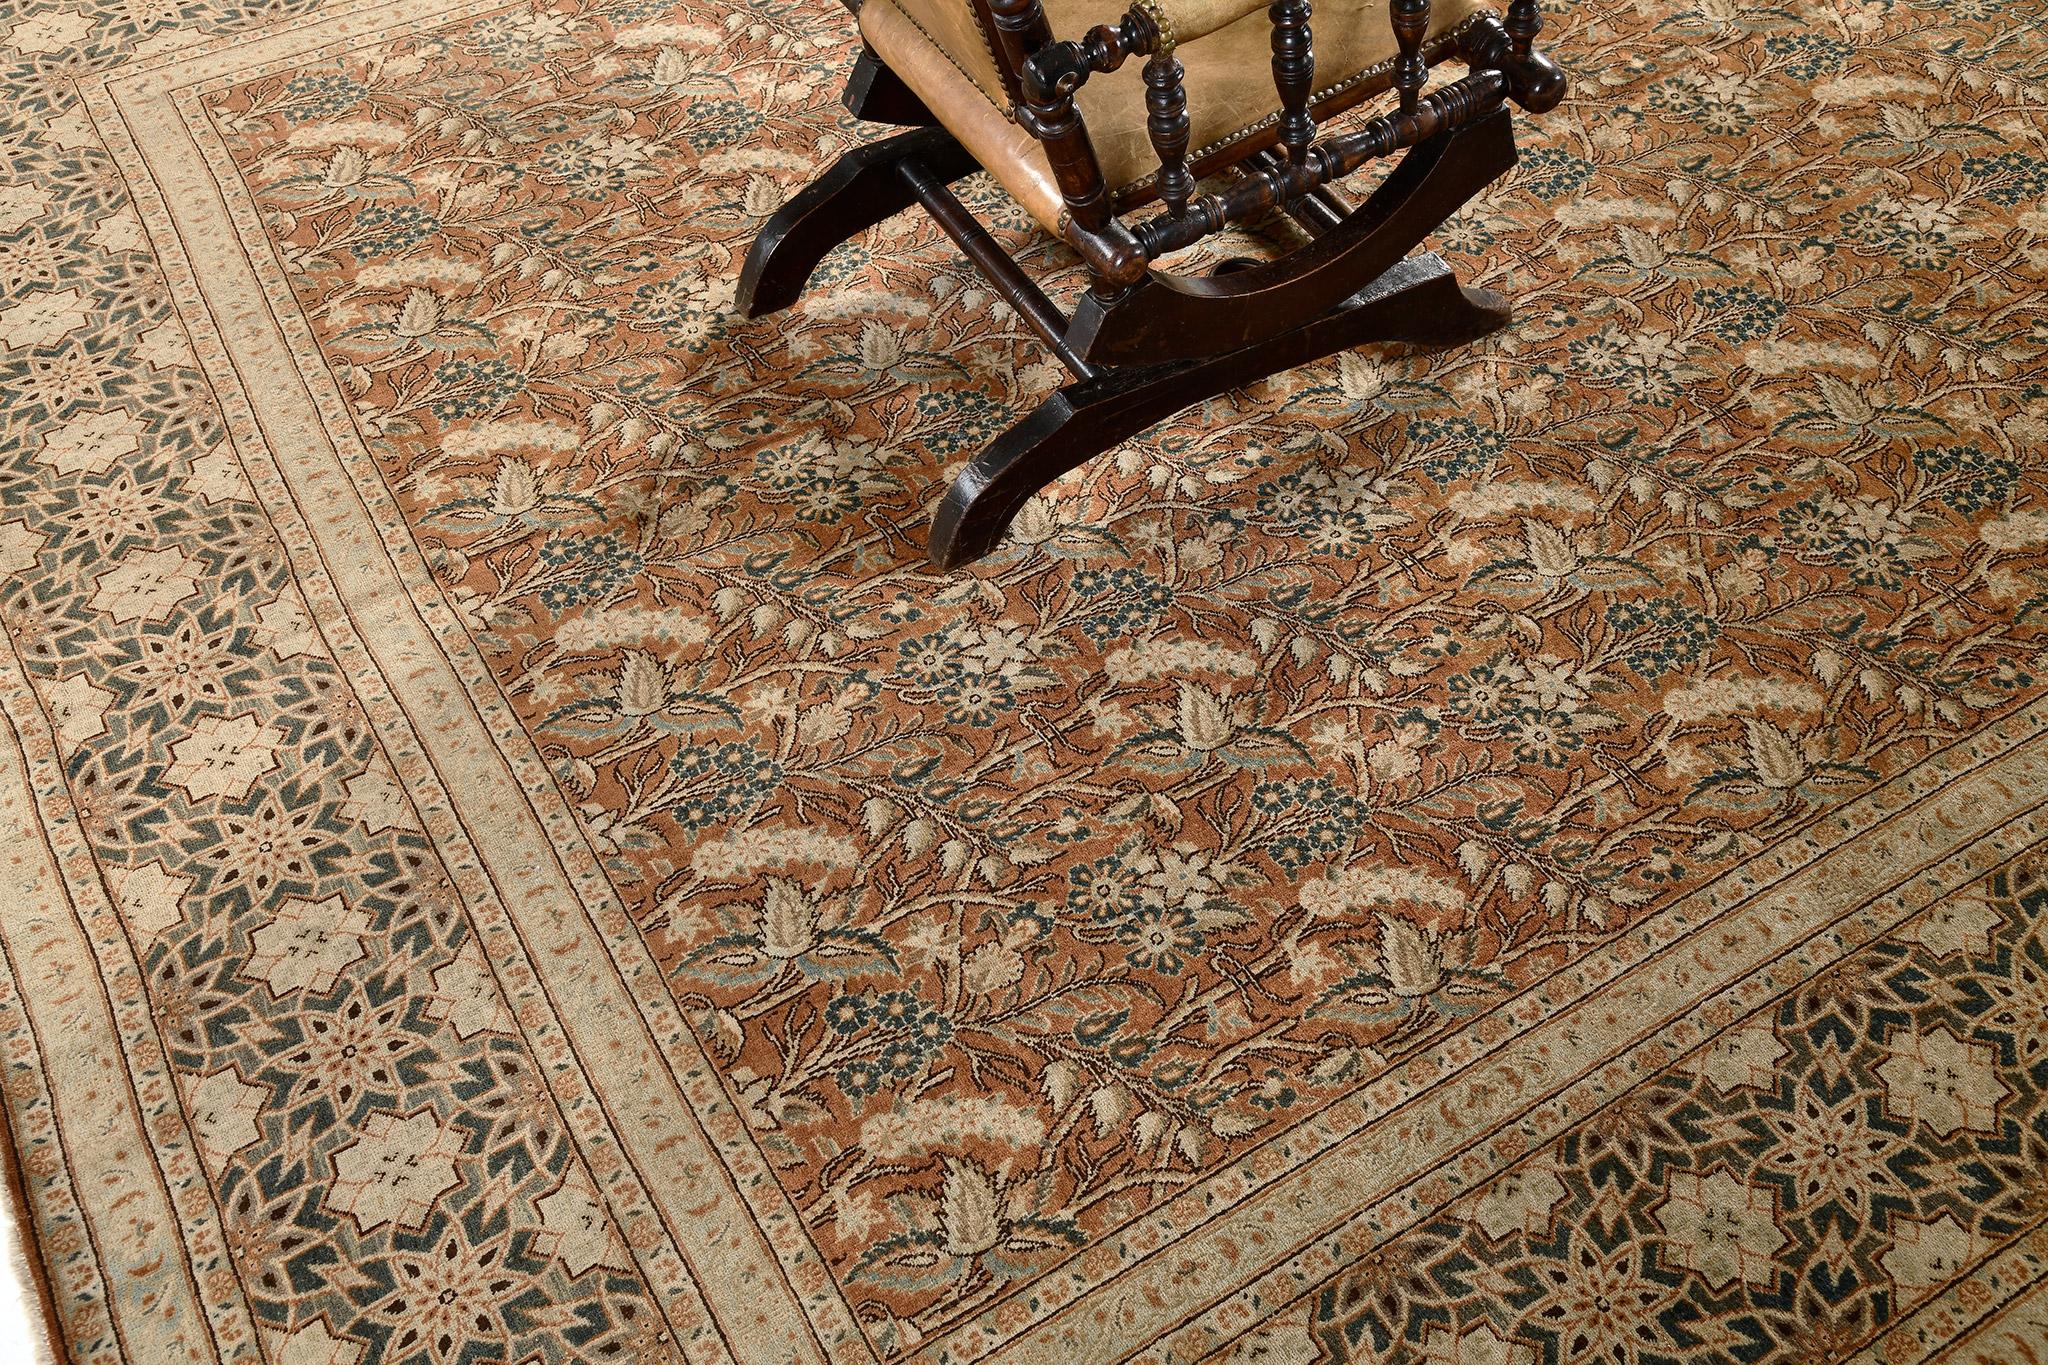 Dieser klassische Tabriz-Teppich aus Persien, der aus handgesponnener Wolle besteht, fasziniert immer wieder durch seine atemberaubenden Details. Es hat eine perfekte Ausrichtung von geometrischen Mustern und das symmetrische blühende Weizenfeld mit